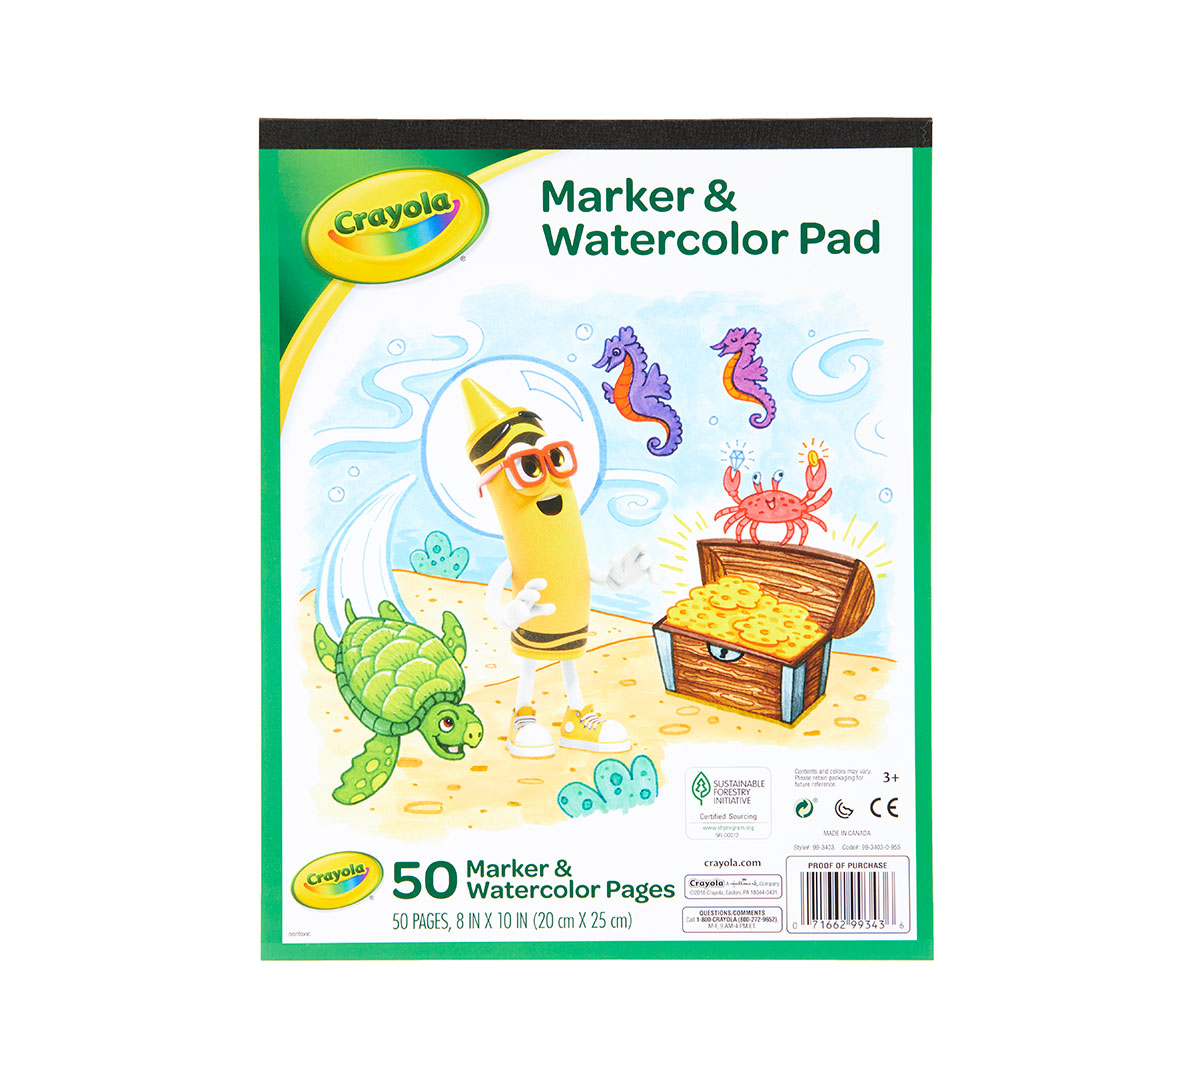 Crayola Marker and Watercolor Paper Pad, 50 Pages | Crayola.com | Crayola